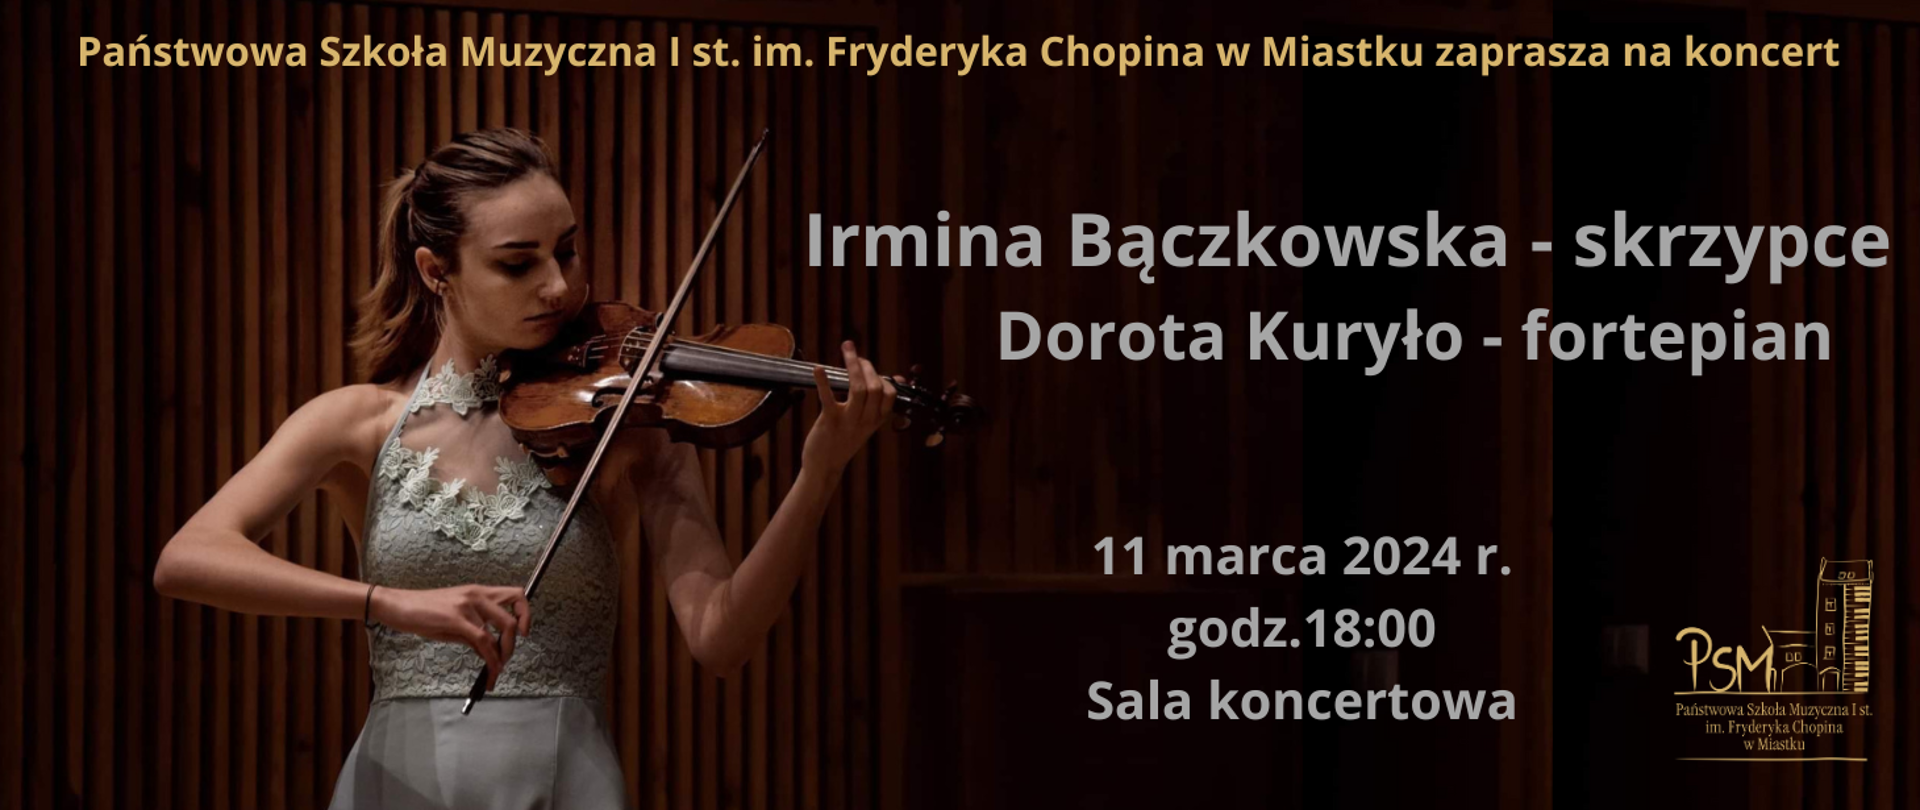 Grafika informująca o koncercie w dniu 11 marca 2024 r. w wykonaniu Irminy Bączkowskiej - skrzypce oraz Doroty Kuryło - fortepian